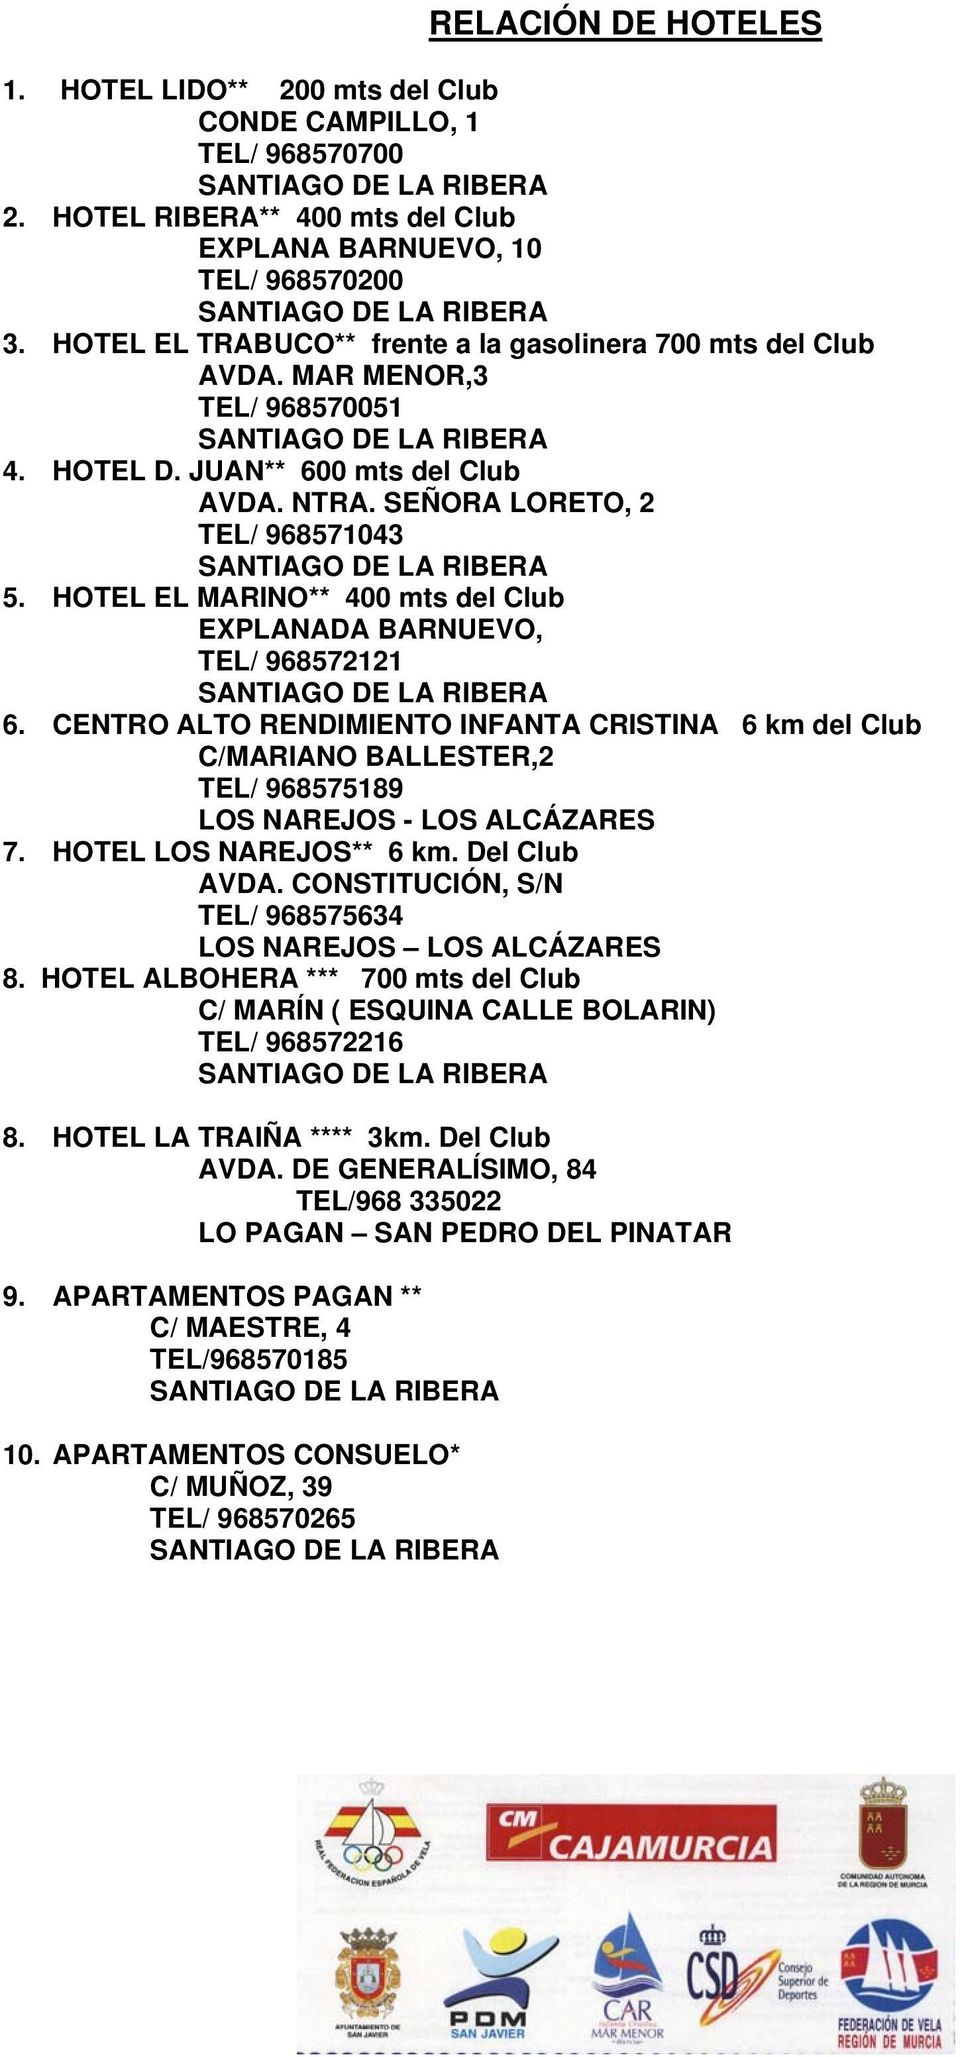 HOTEL EL MARINO** 400 mts del Club EXPLANADA BARNUEVO, TEL/ 968572121 6. CENTRO ALTO RENDIMIENTO INFANTA CRISTINA 6 km del Club C/MARIANO BALLESTER,2 TEL/ 968575189 LOS NAREJOS - LOS ALCÁZARES 7.